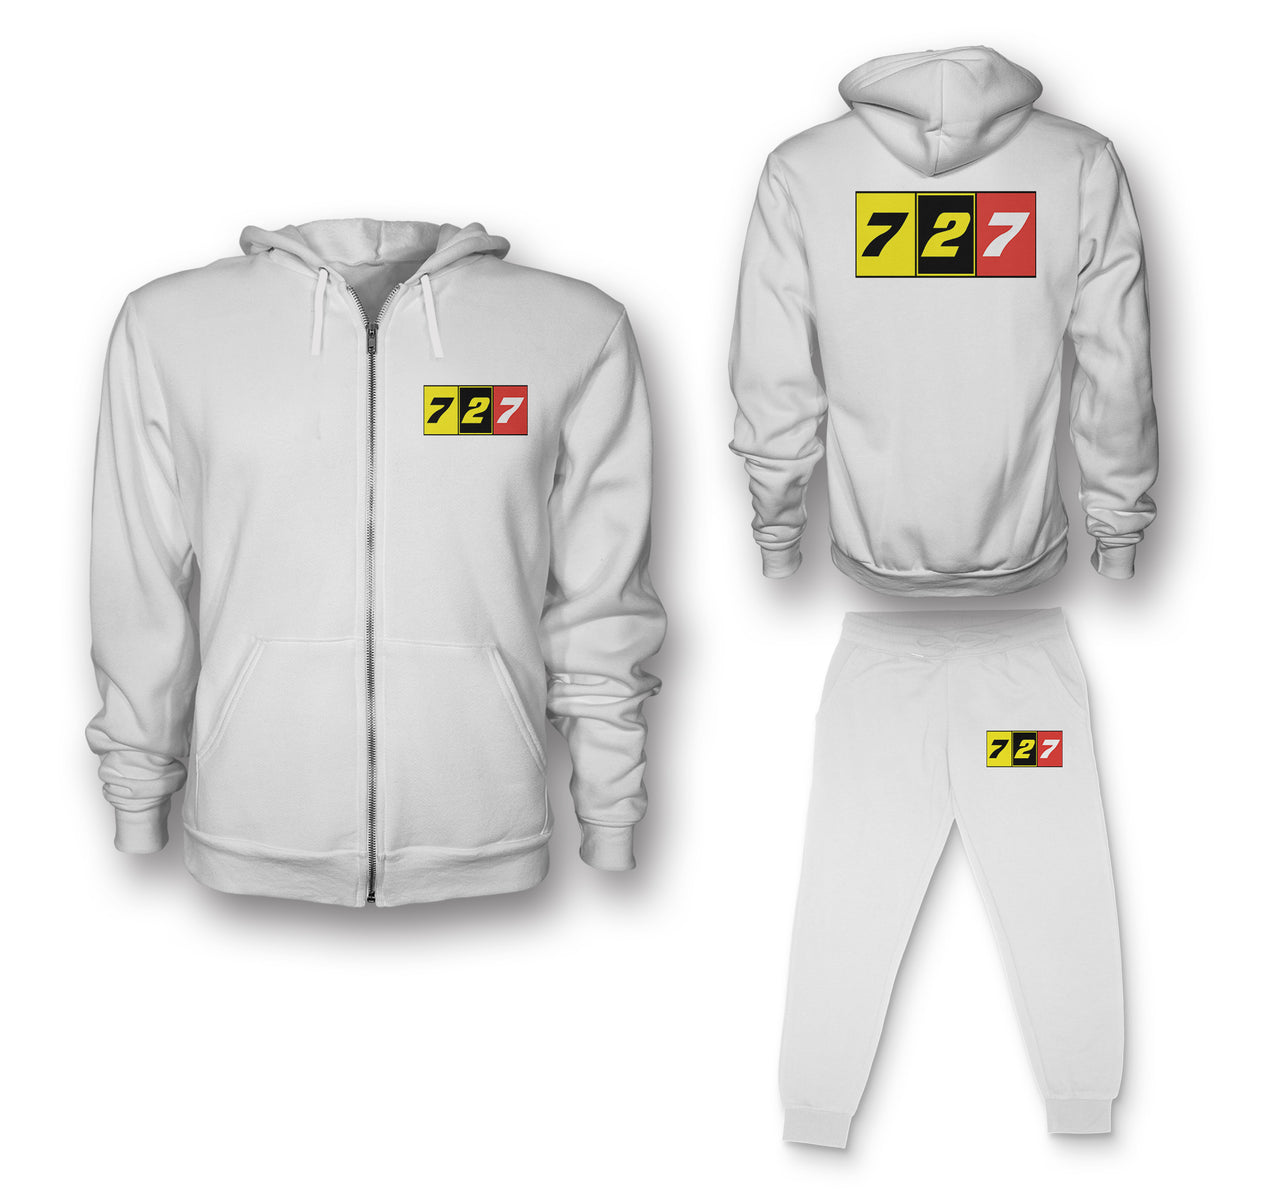 Flat Colourful 727 Designed Zipped Hoodies & Sweatpants Set